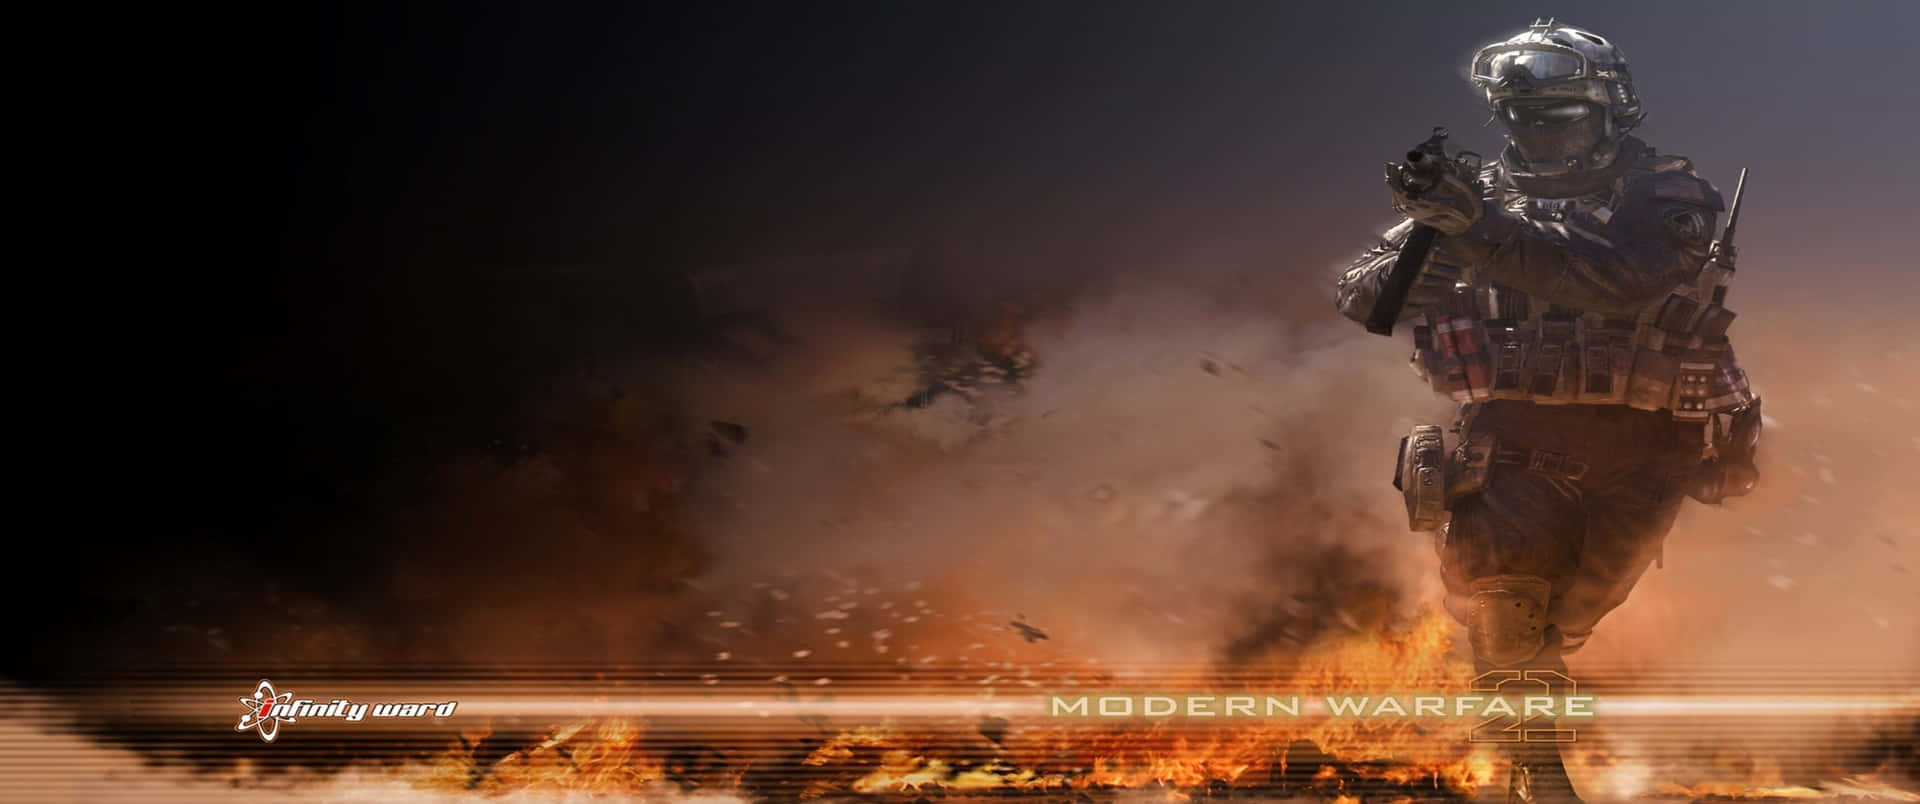 Fiery Backdrop 3440x1440p Call Of Duty Modern Warfare Background